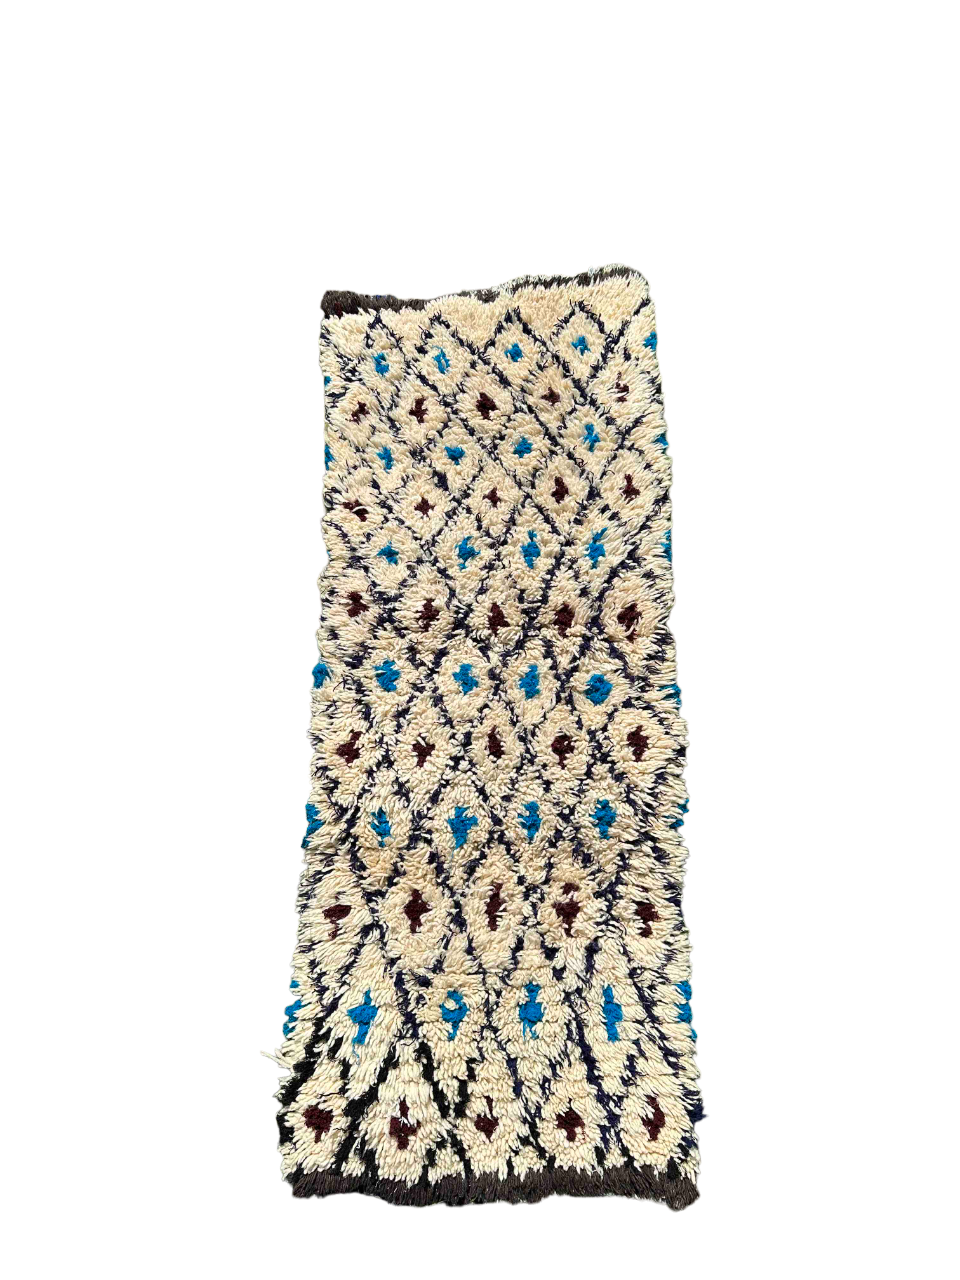 Beni Quarain Marrokansk tæppe hvide, sorte, blå og brune nuancer.